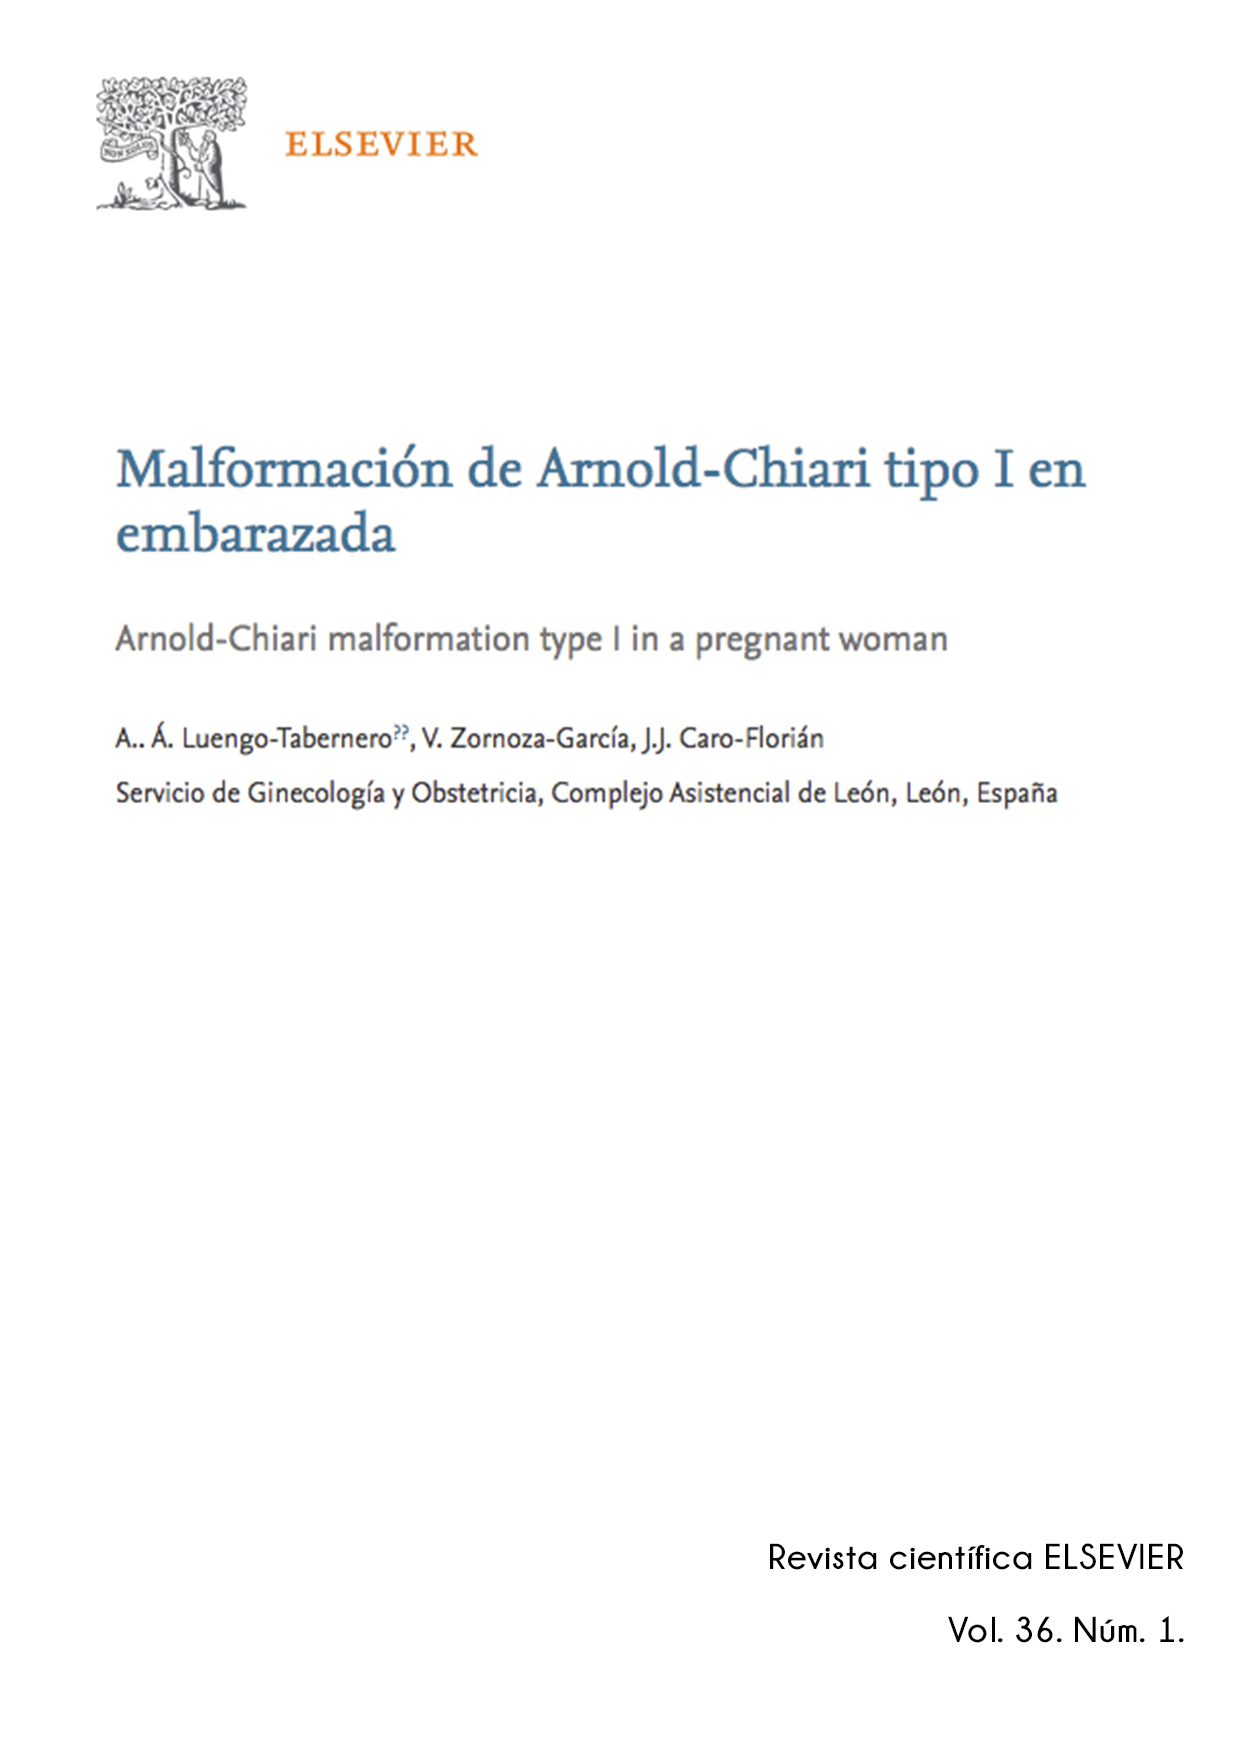 Malformación de Arnold-Chiari tipo I en embarazada Elsevier revista científica